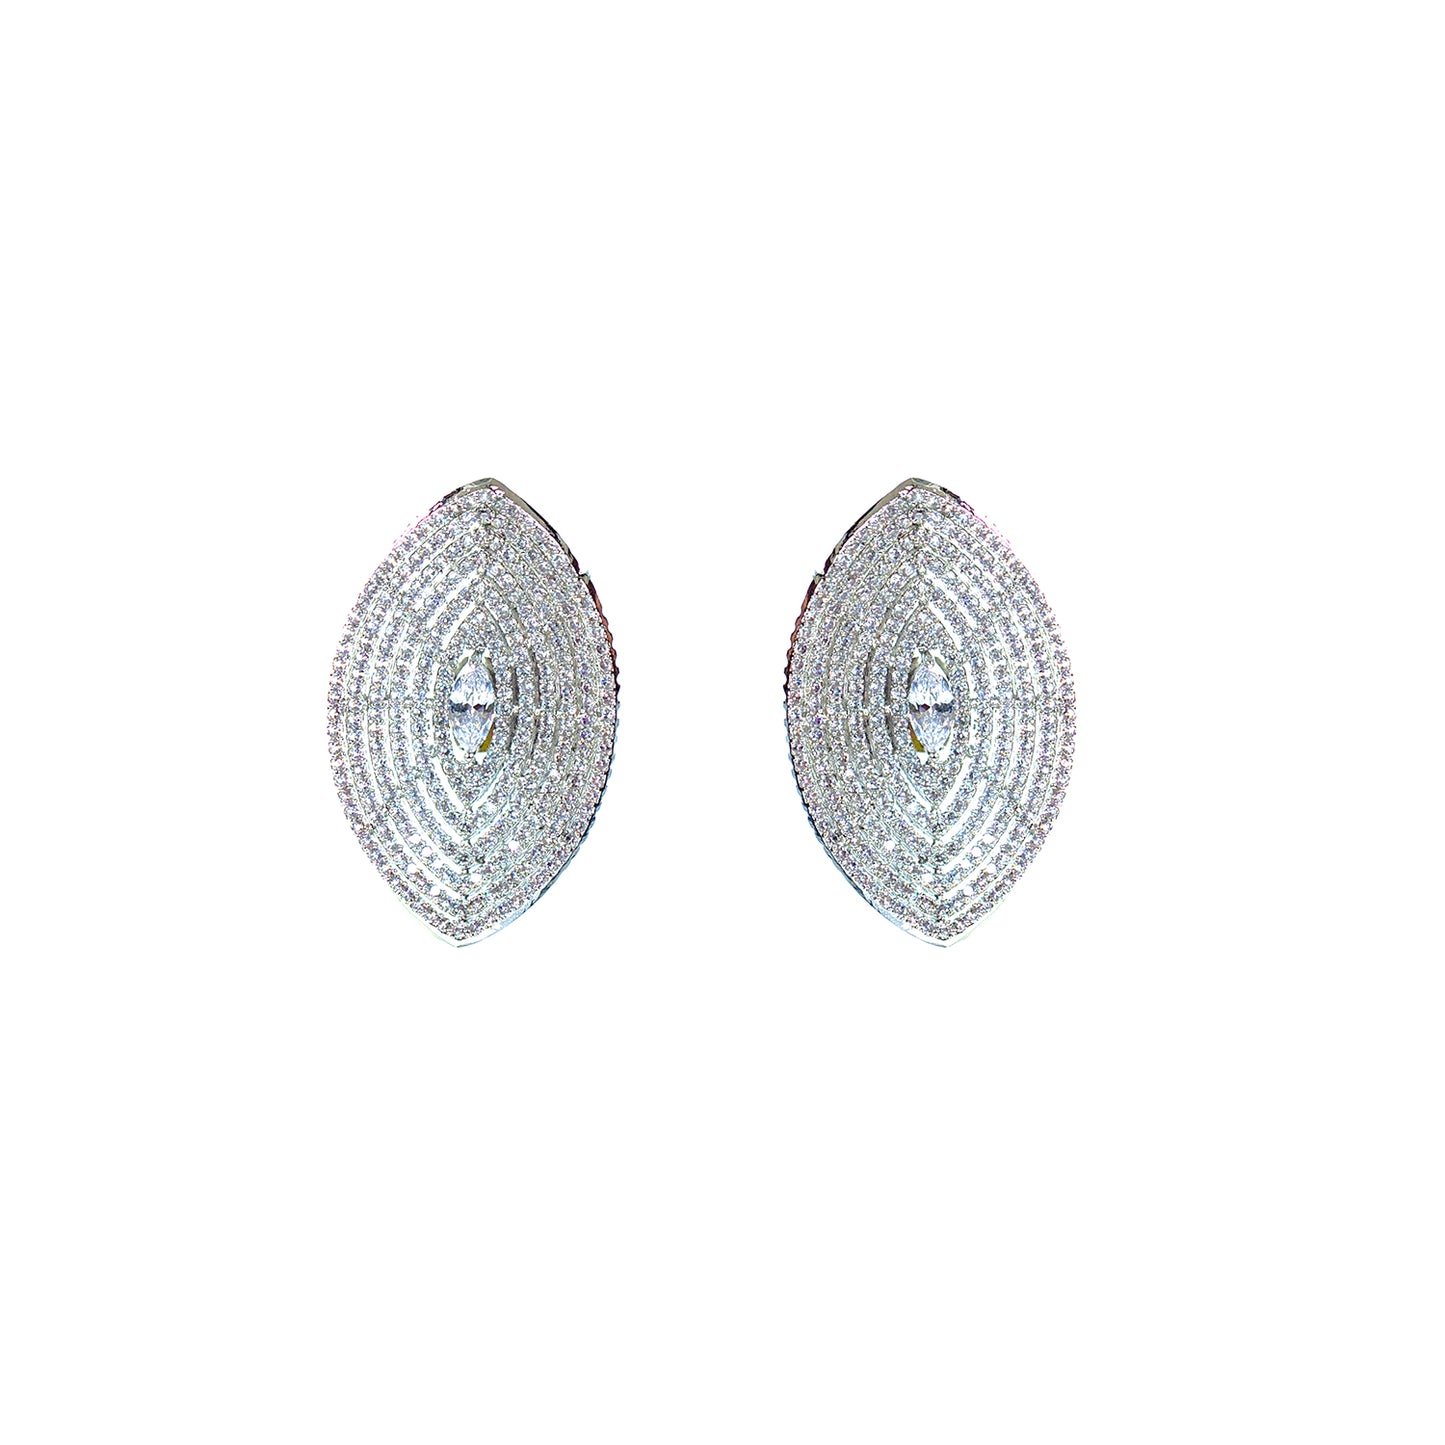 Buy clovia zircon stud earring Online